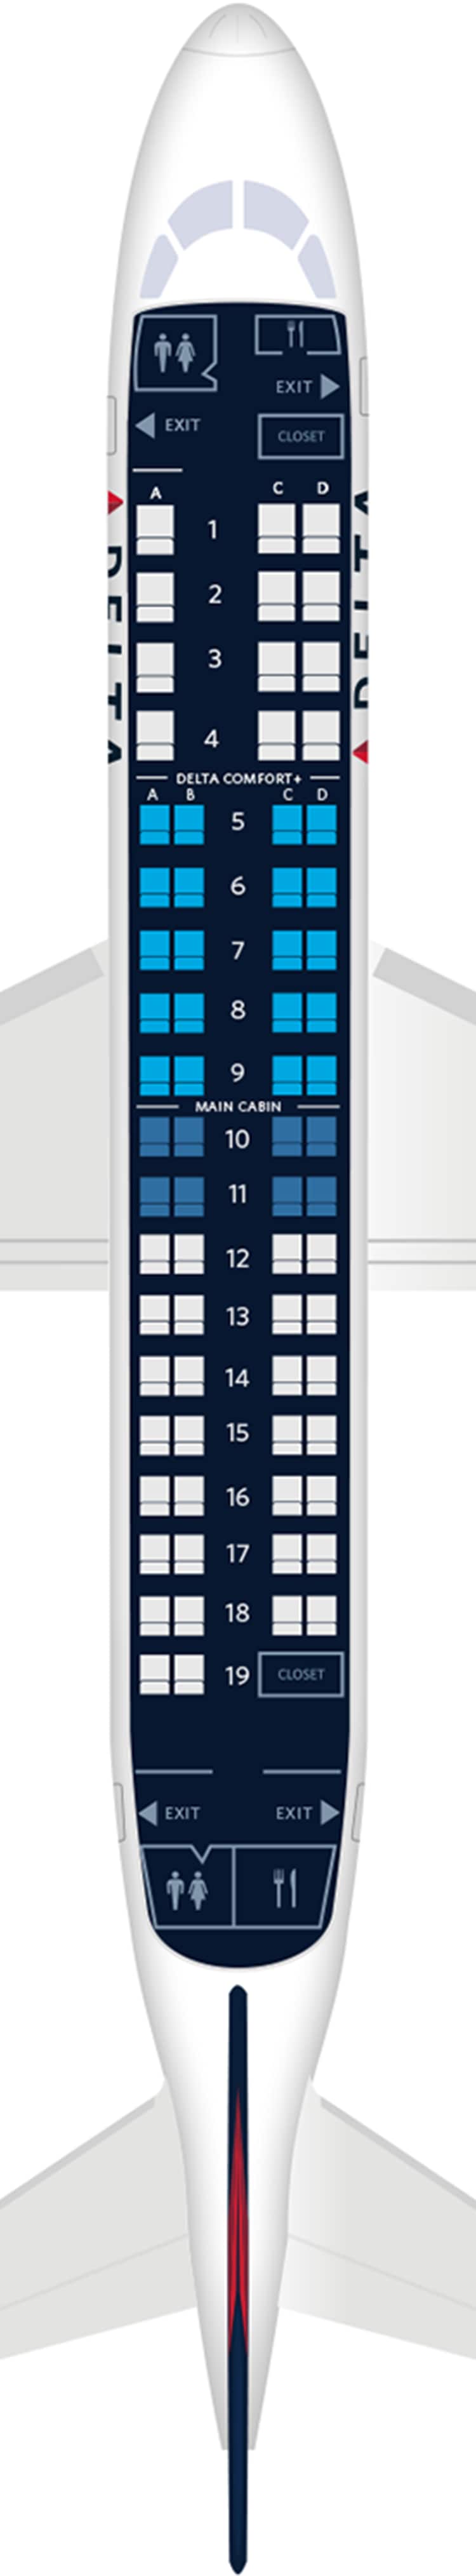 Embraer Erj 175 Aircraft Seat Maps Specs Amenities Delta Air